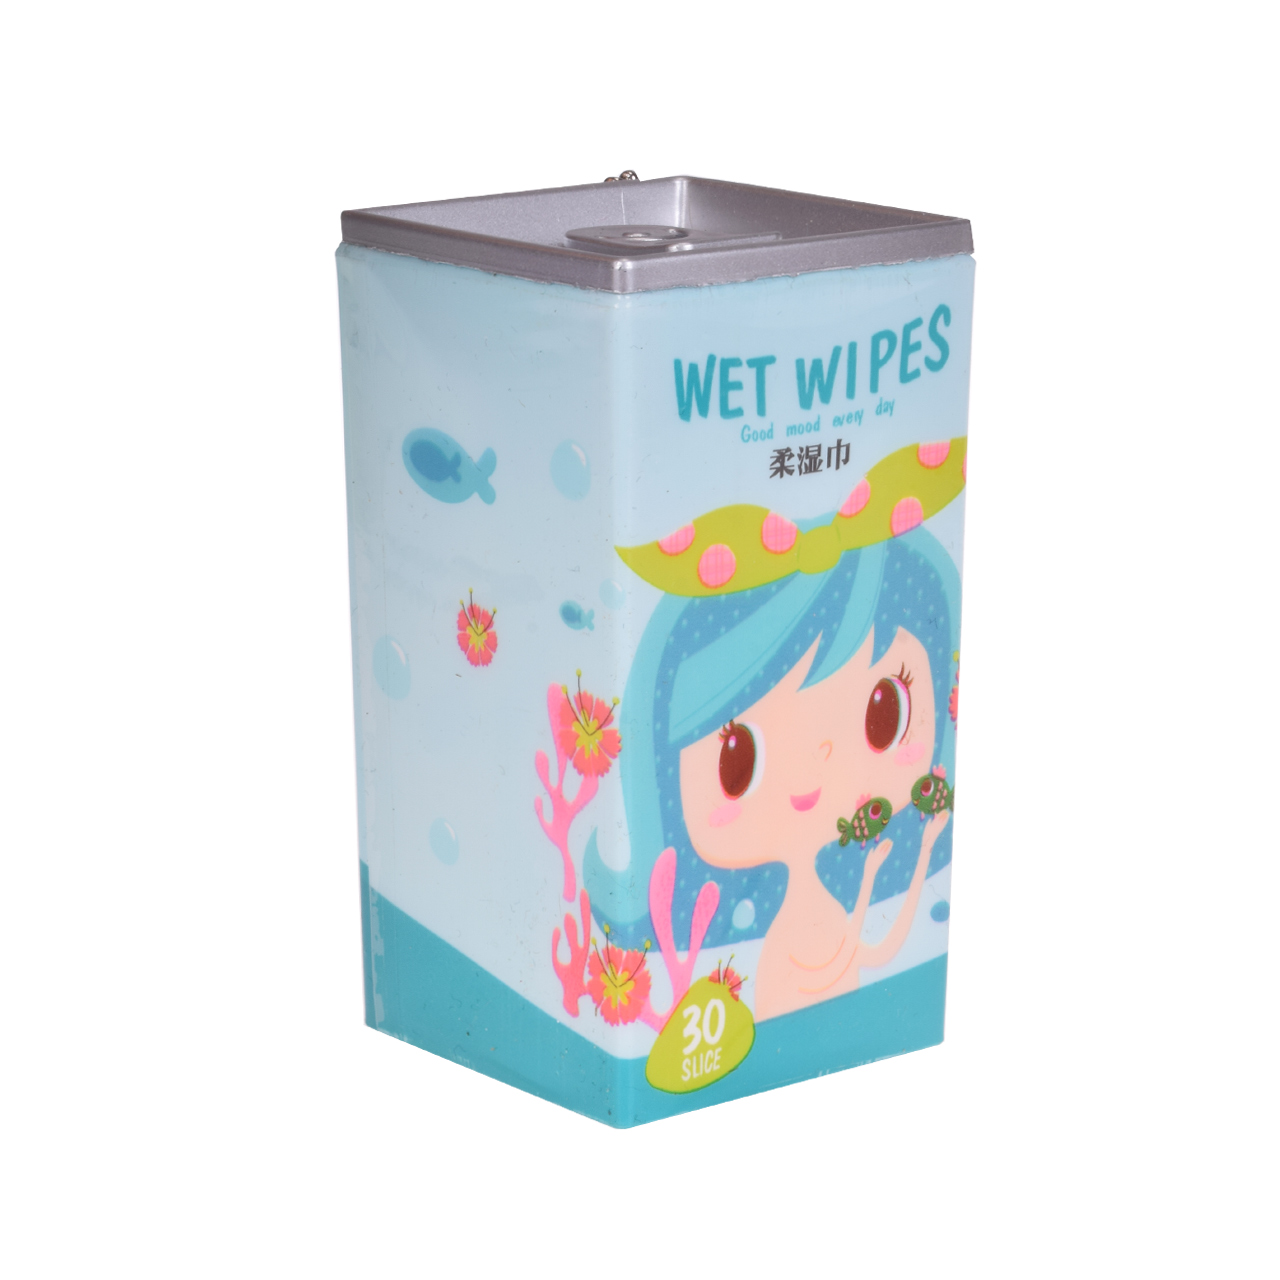 دستمال مرطوب مدل wet wipes 2 بسته 30 عددی